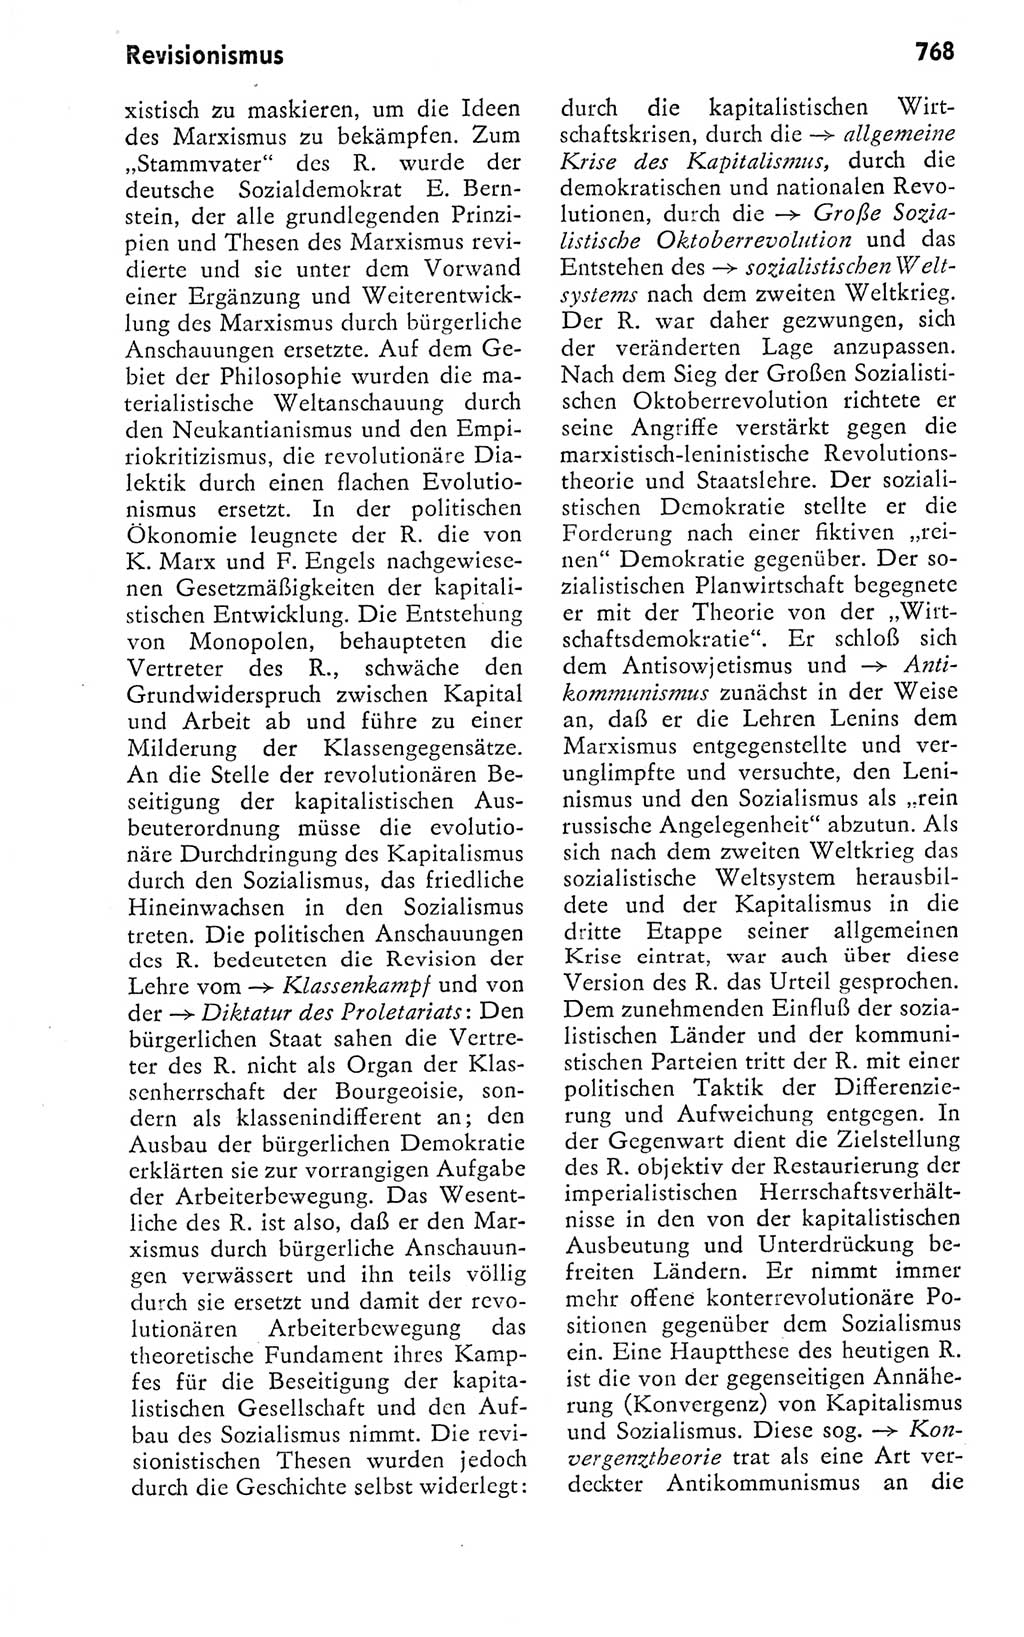 Kleines politisches Wörterbuch [Deutsche Demokratische Republik (DDR)] 1978, Seite 768 (Kl. pol. Wb. DDR 1978, S. 768)